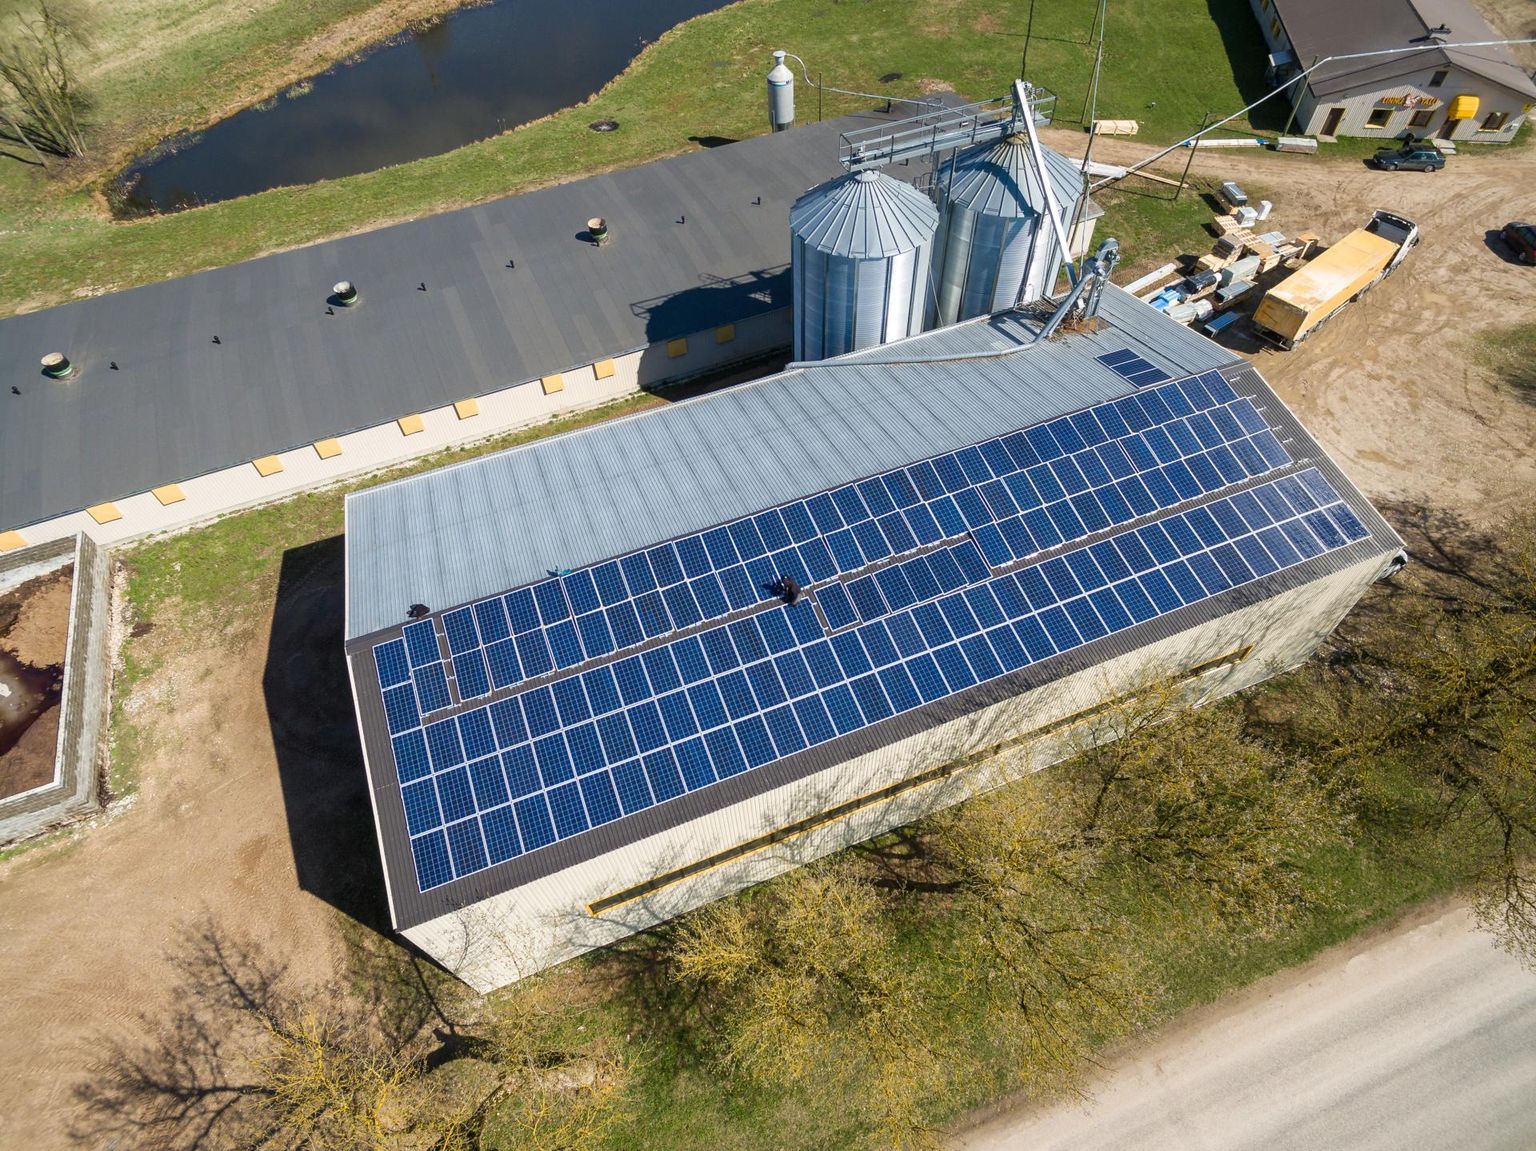 Linnu talu kanafarmid on üks paljudest põllumajandusettevõtetest, kes oma tootmises päikesenergiat kasutab.